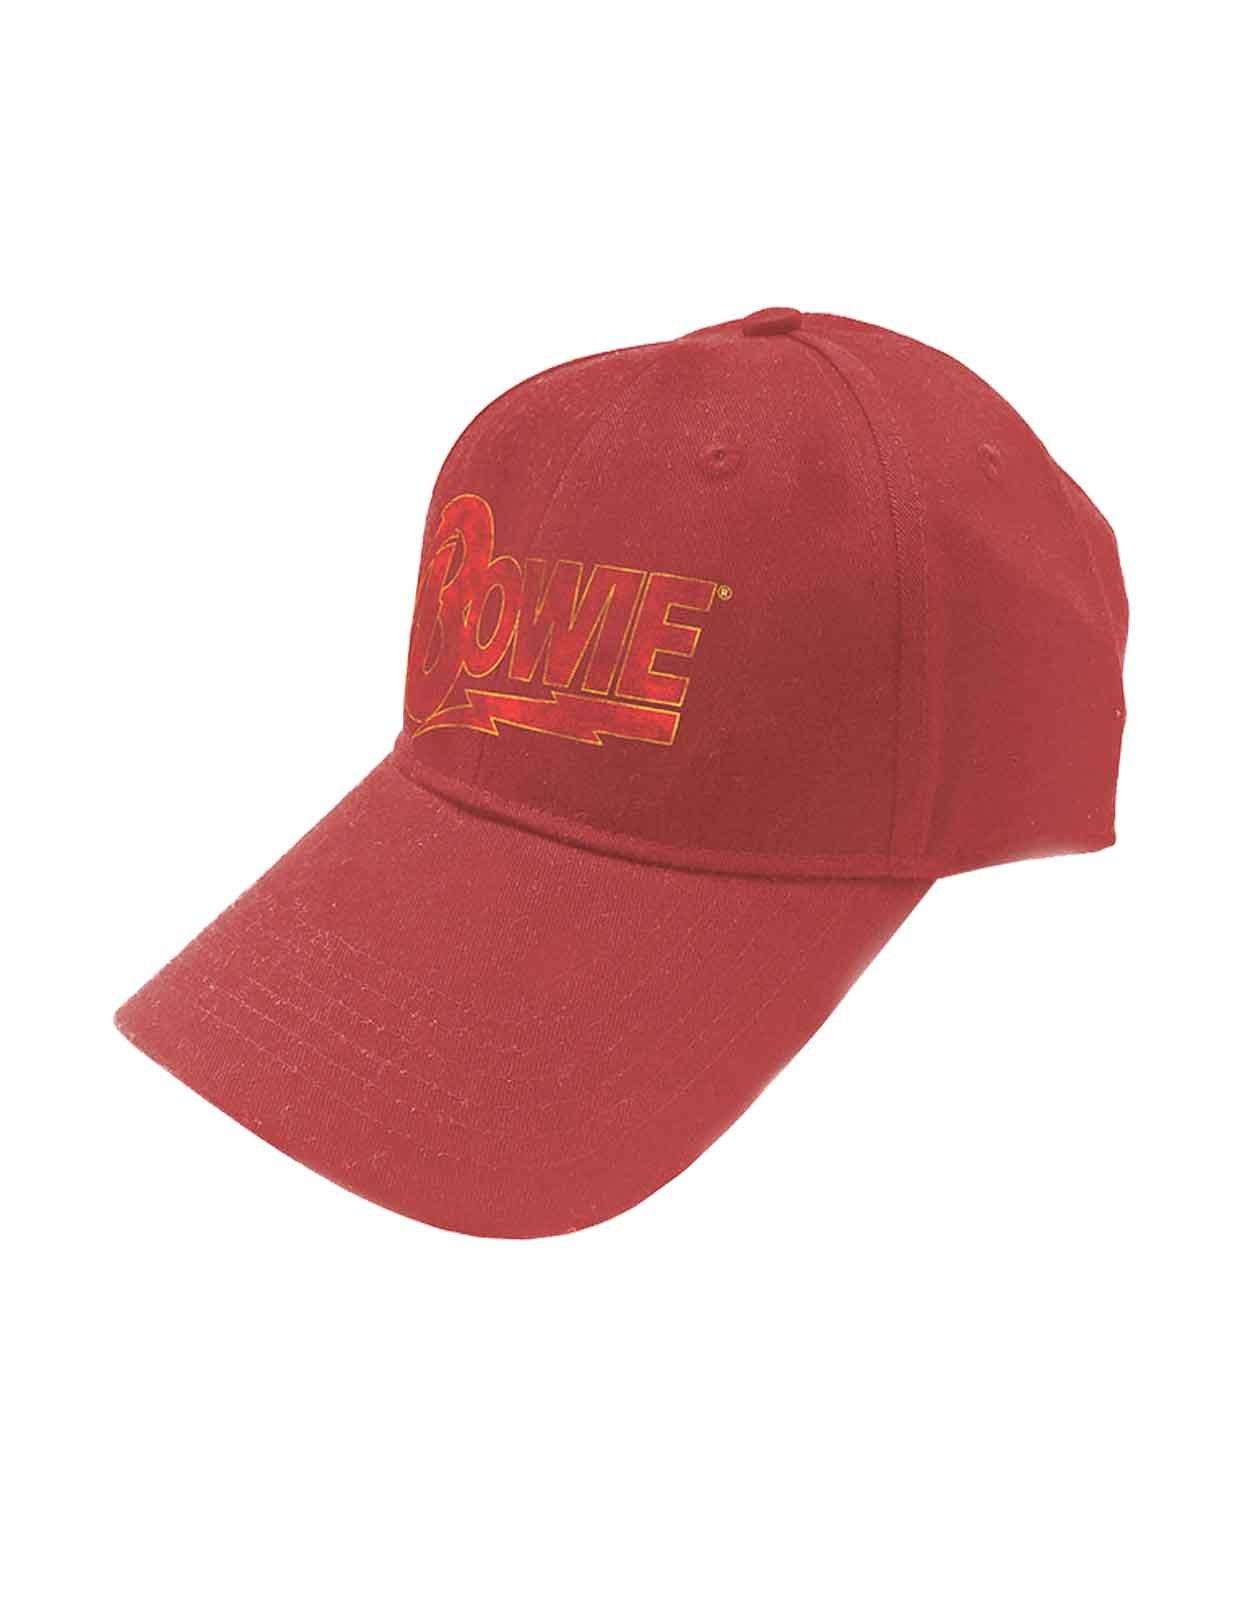 Бейсбольная кепка Snapback с логотипом Flash David Bowie, красный бейсболка красный